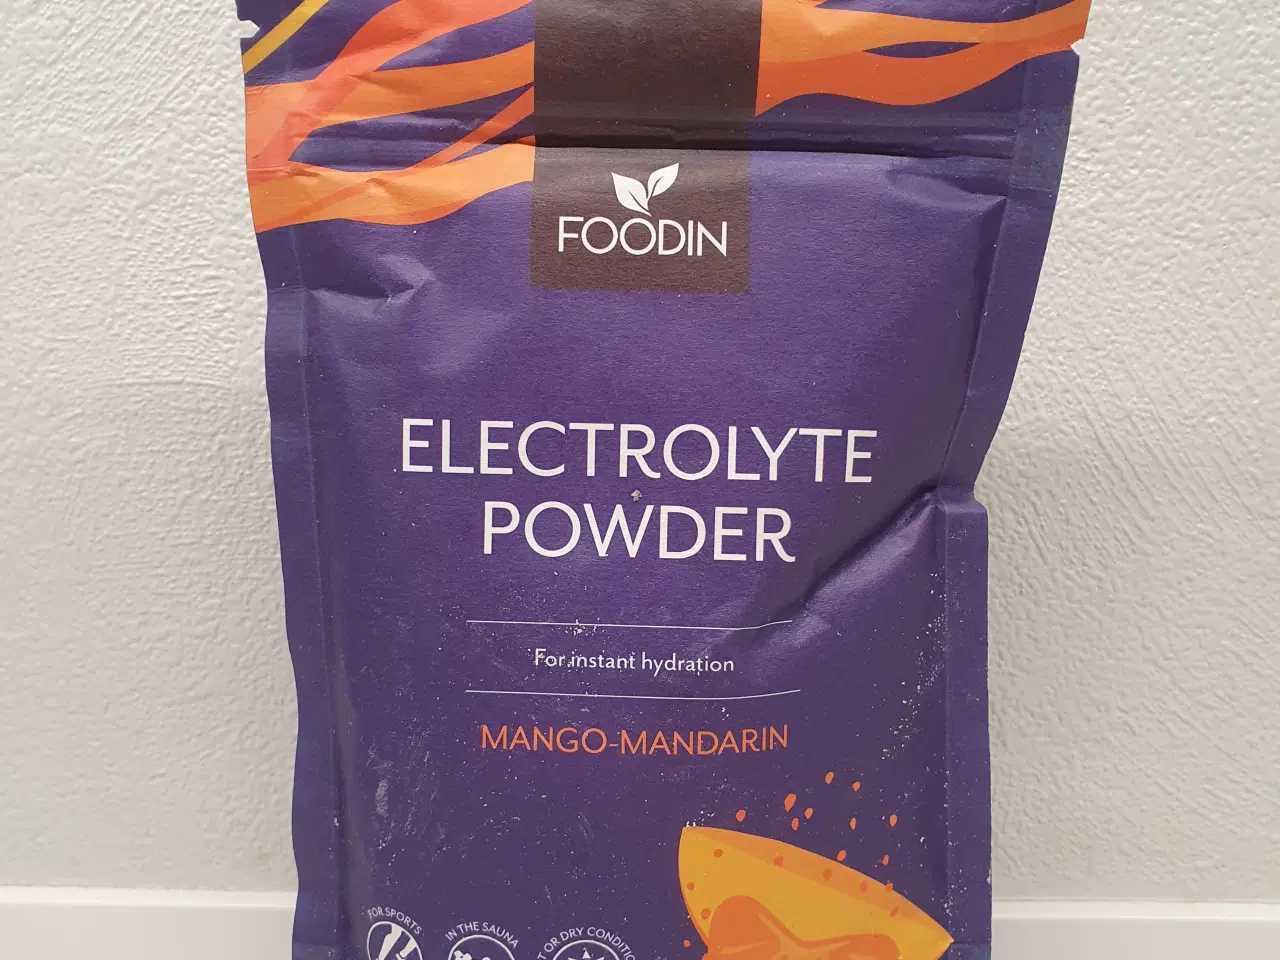 Billede 3 - Foodin Electrolyte Powder med smag